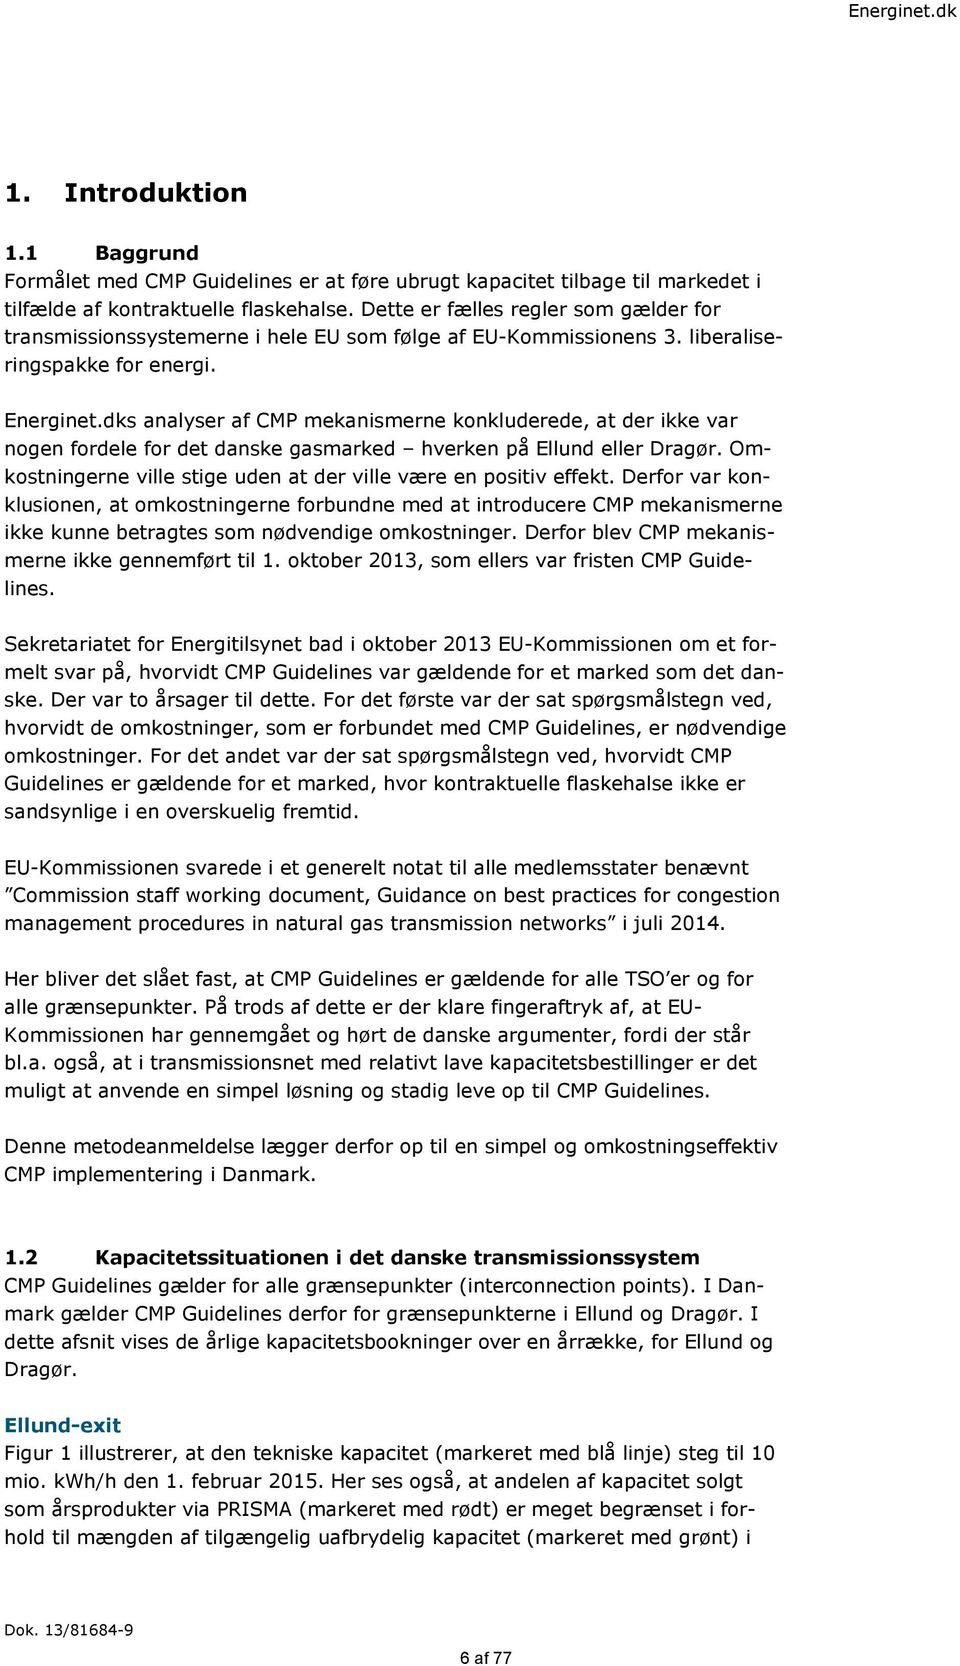 dks analyser af CMP mekanismerne konkluderede, at der ikke var nogen fordele for det danske gasmarked hverken på Ellund eller Dragør.